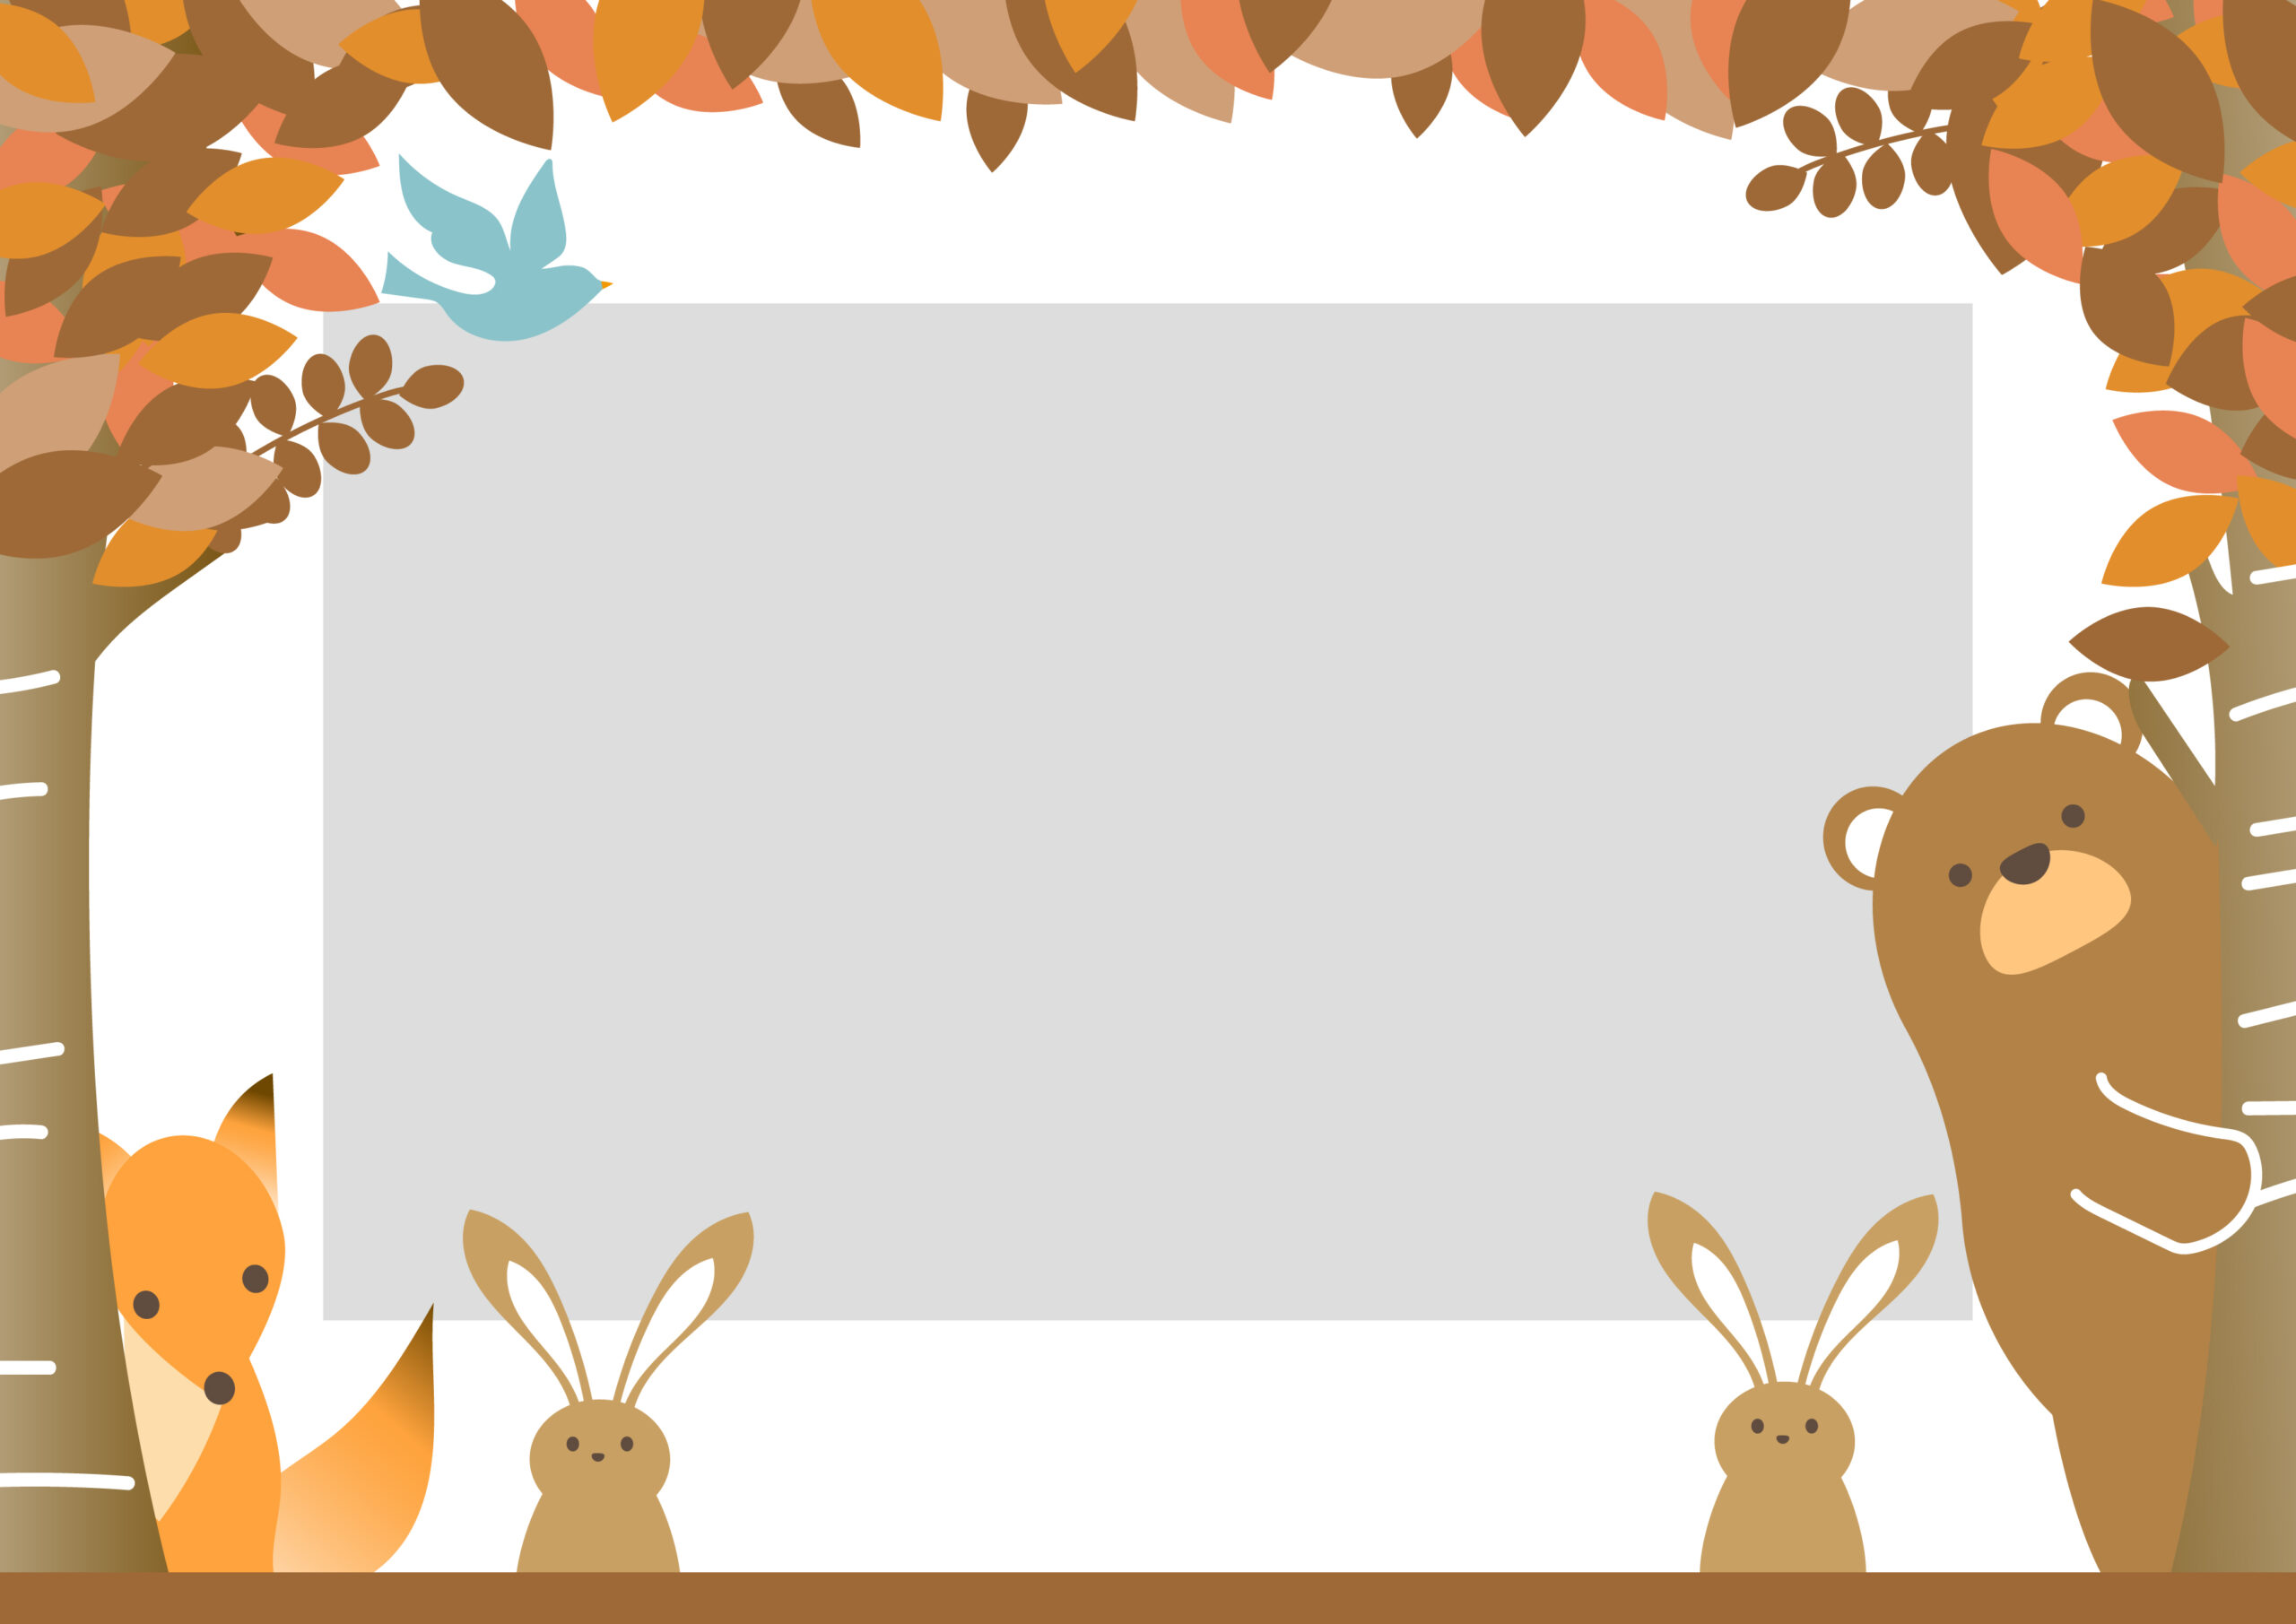 秋の森と動物のかわいいフレーム素材となり、小学校や保育園、幼稚園の遠足のお知らせやしおりの表紙などの飾り枠におすすめします。ウサギ、クマ、キツネ、鳥のイラスト入りとなっており、子供も目を引くデザインです。ダウンロード：JPGA4